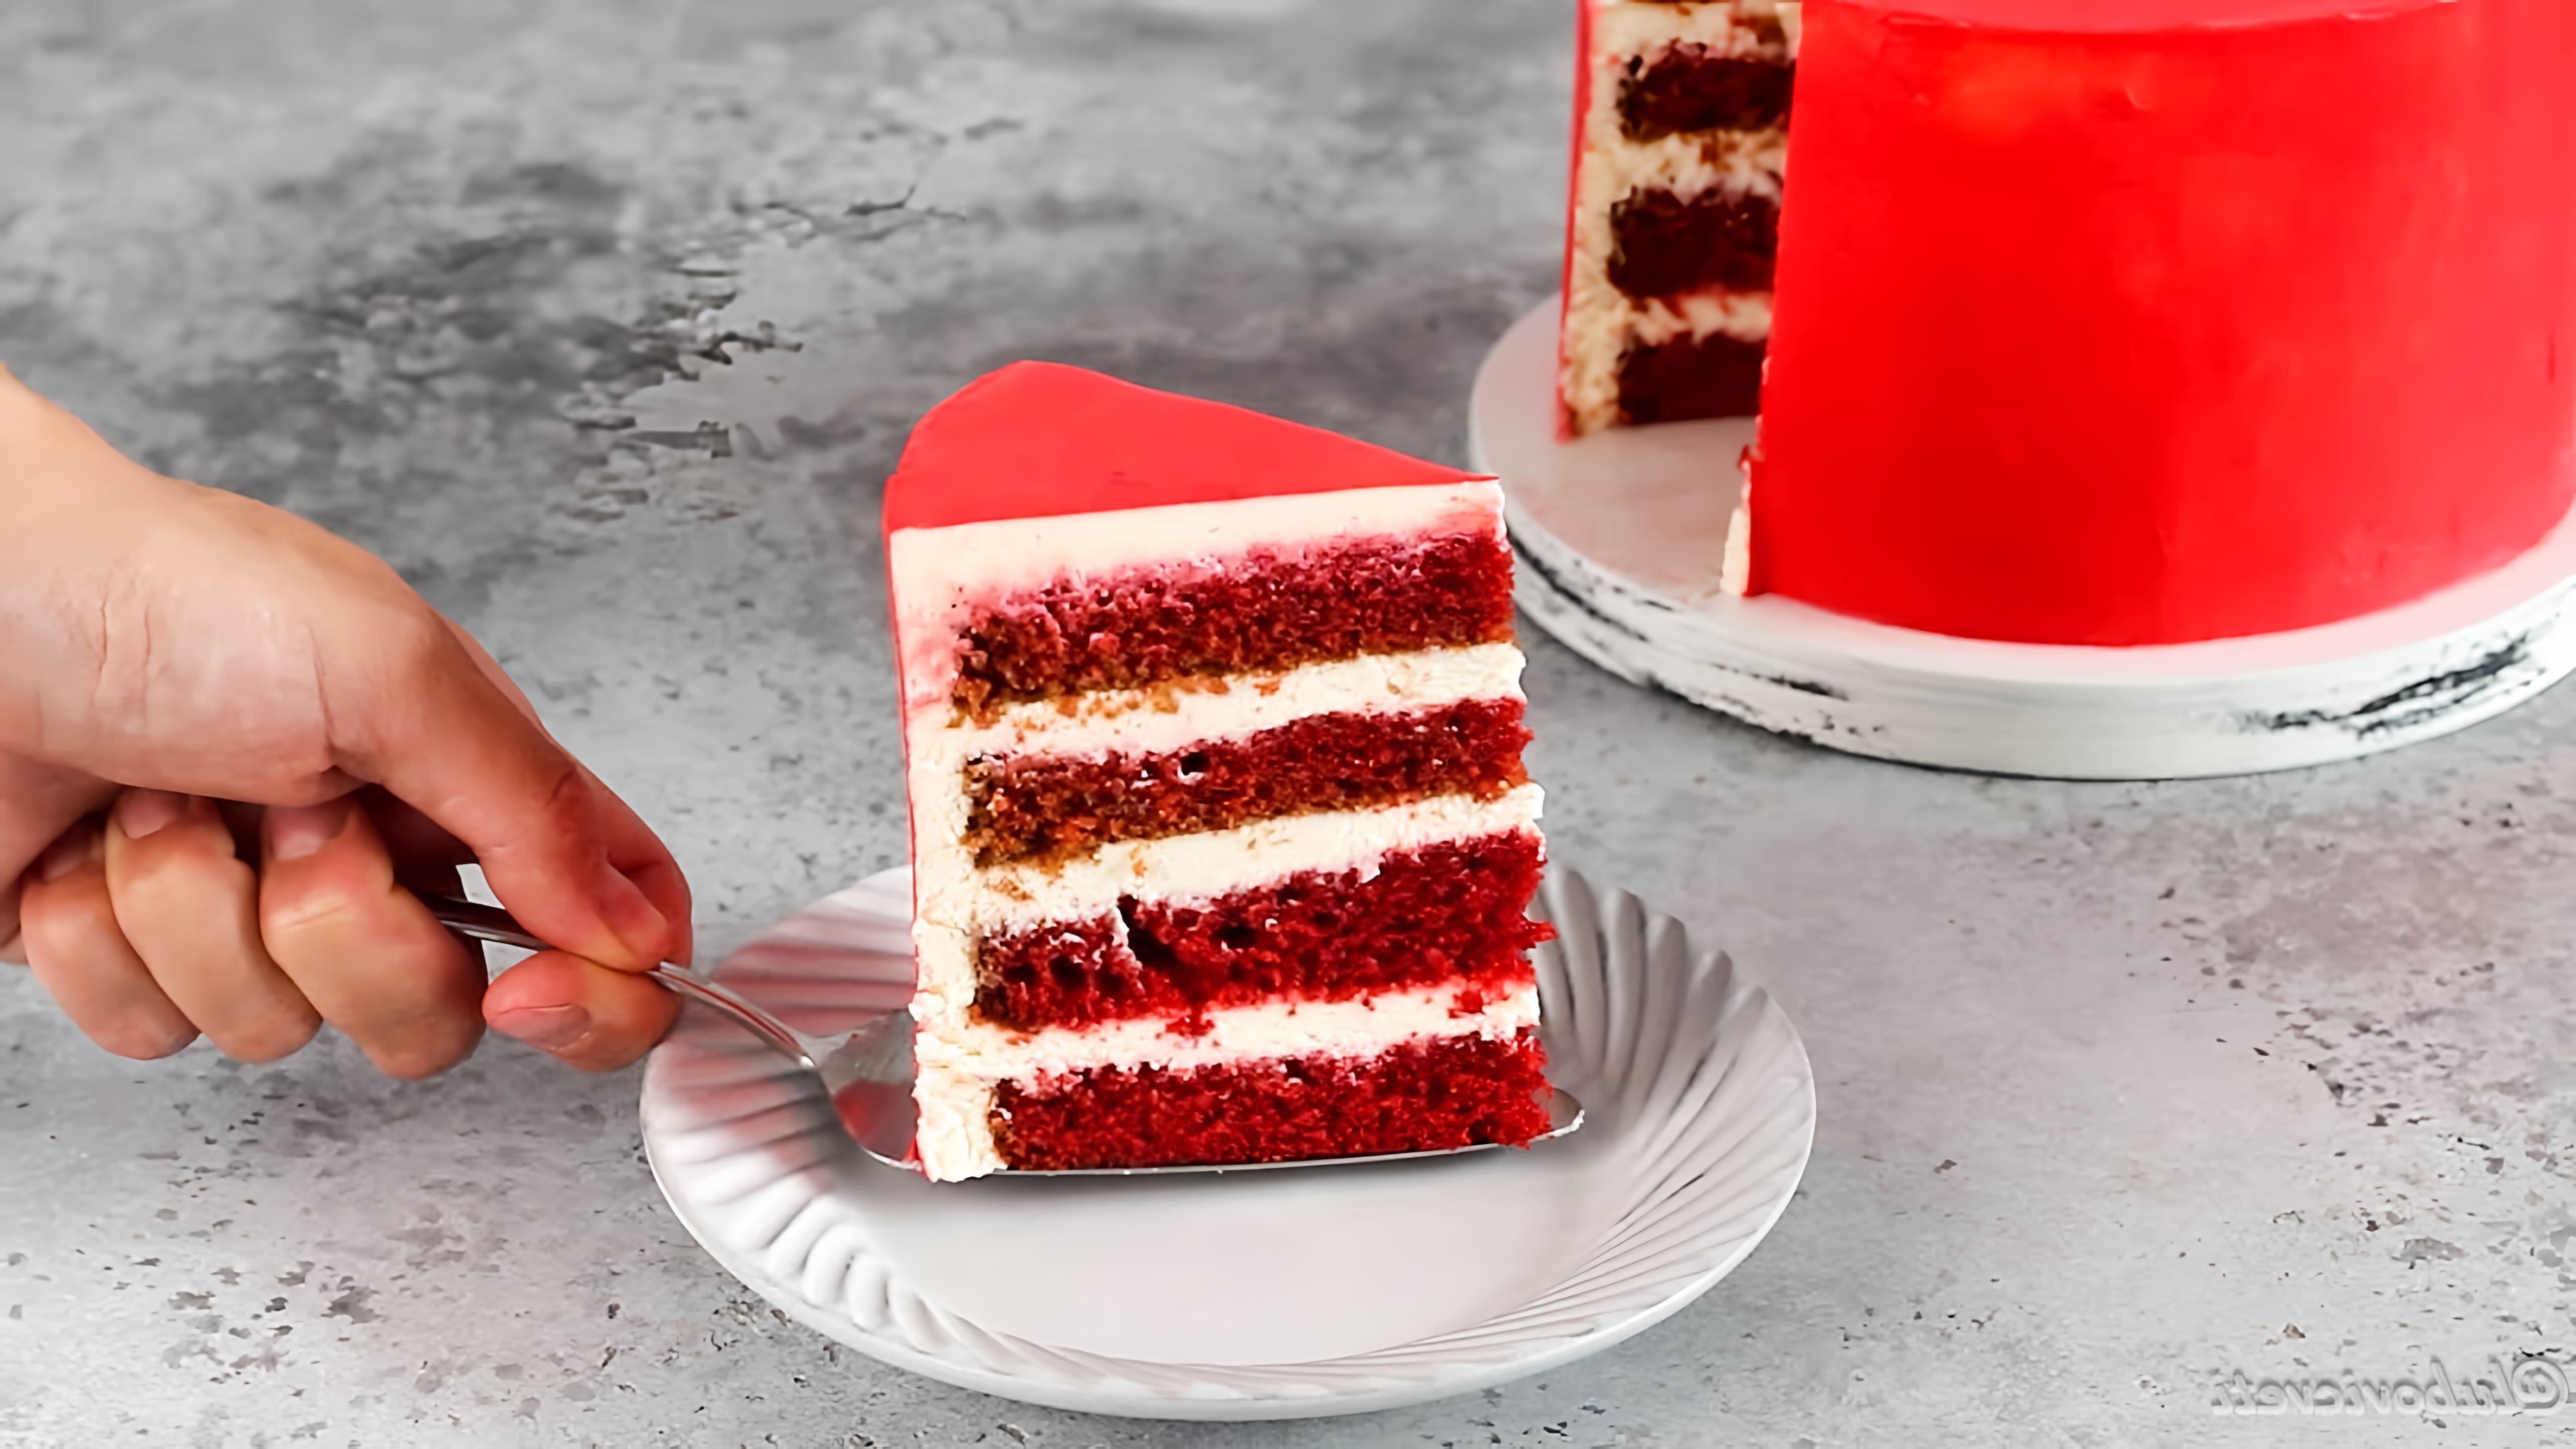 В этом видео демонстрируется рецепт приготовления торта "Красный бархат"